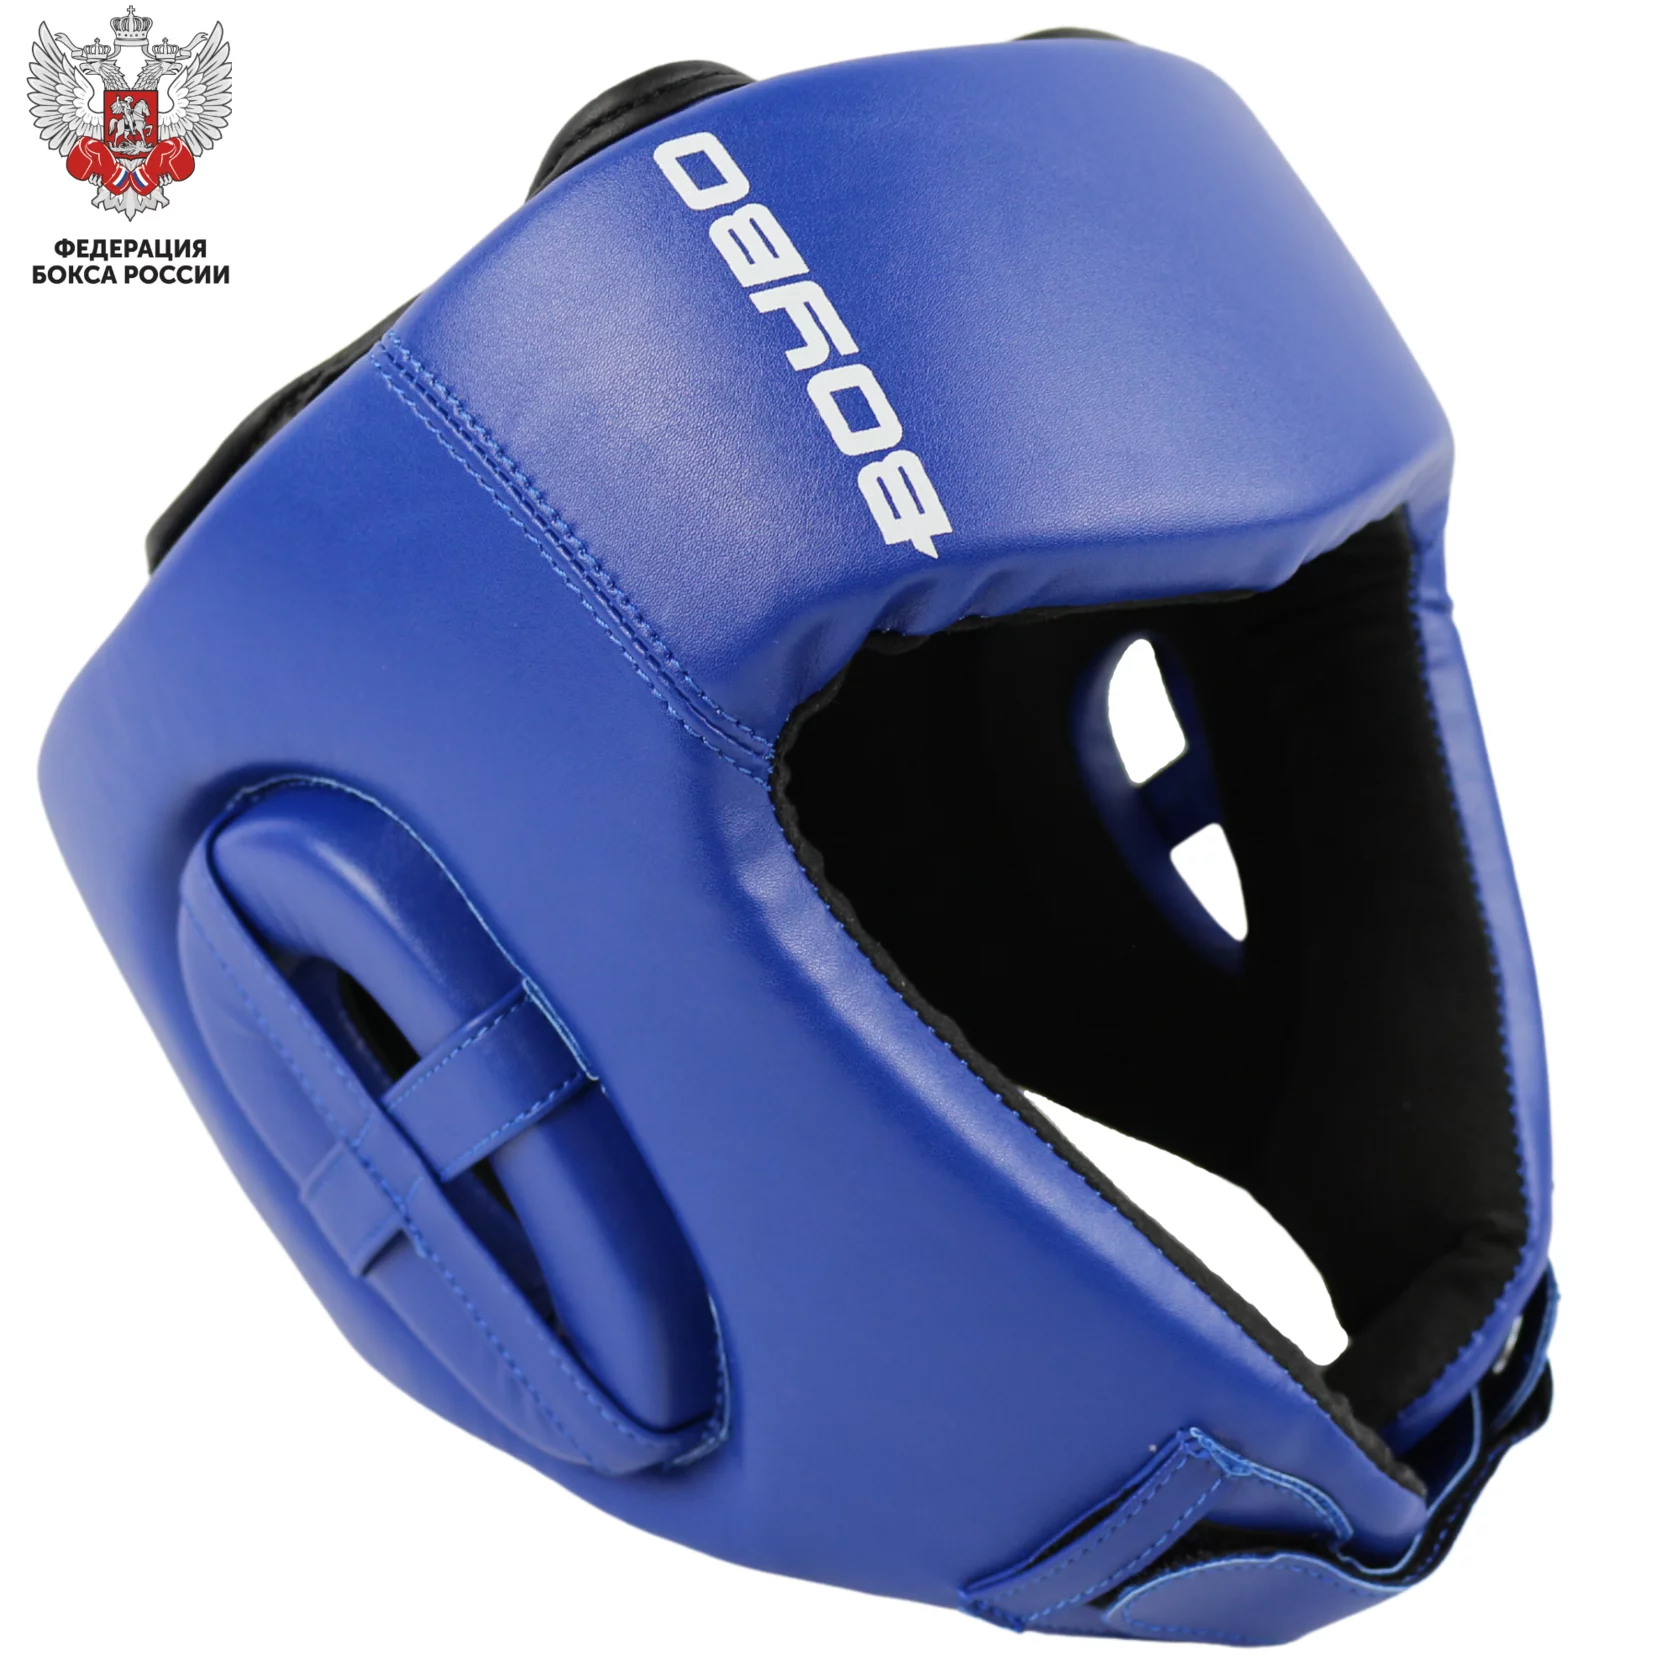 Шлем для бокса BOYBO, цвет синий, одобрен ФЕДЕРАЦИЕЙ БОКСА РОССИИ